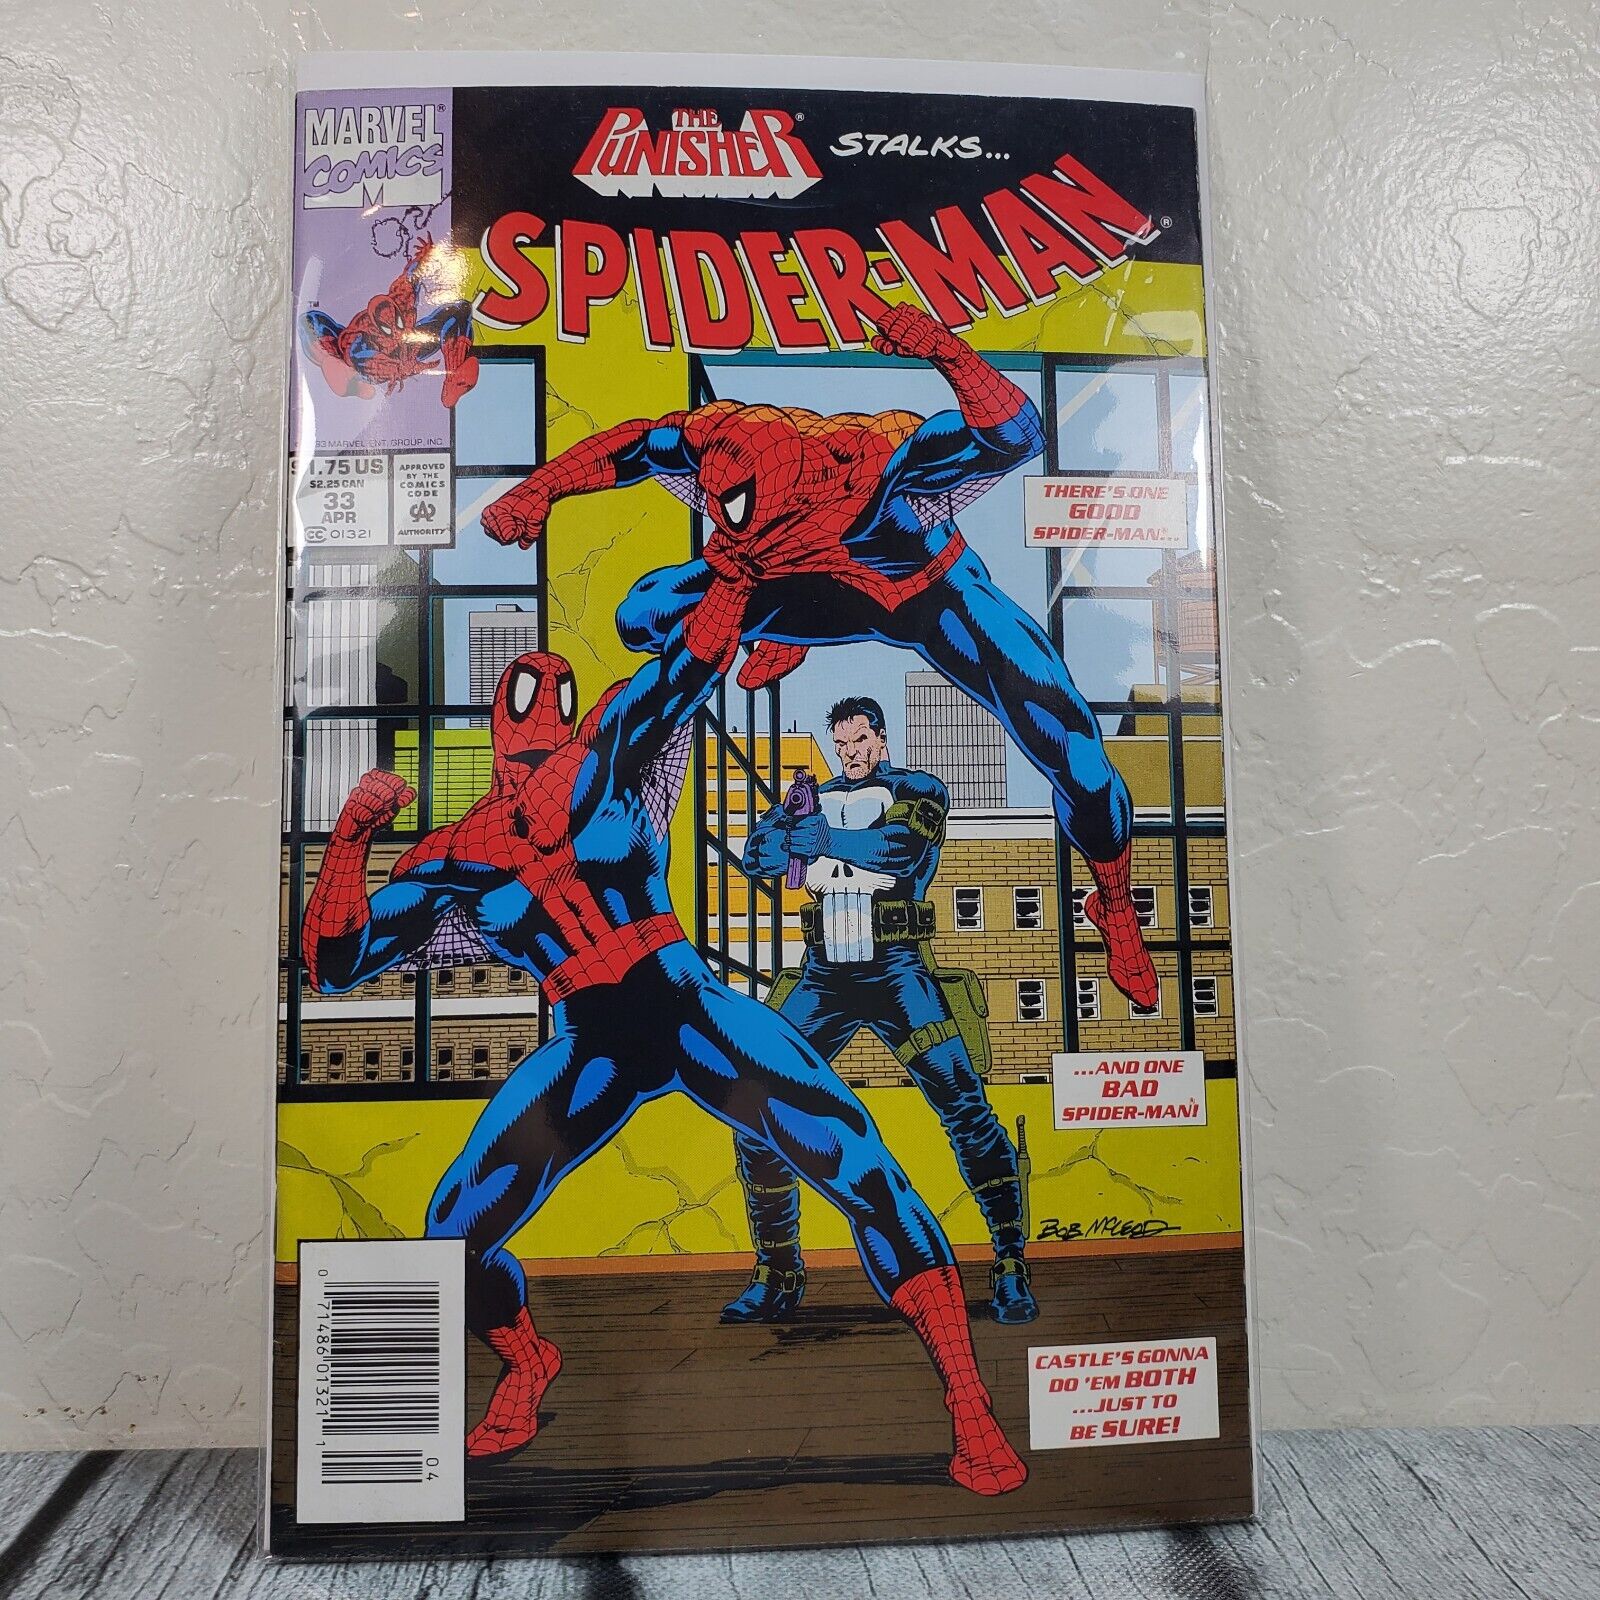 Marvel Comics Spider-Man #33 1993 Vol. 1 Punisher Vintage Comic Book Sleeved